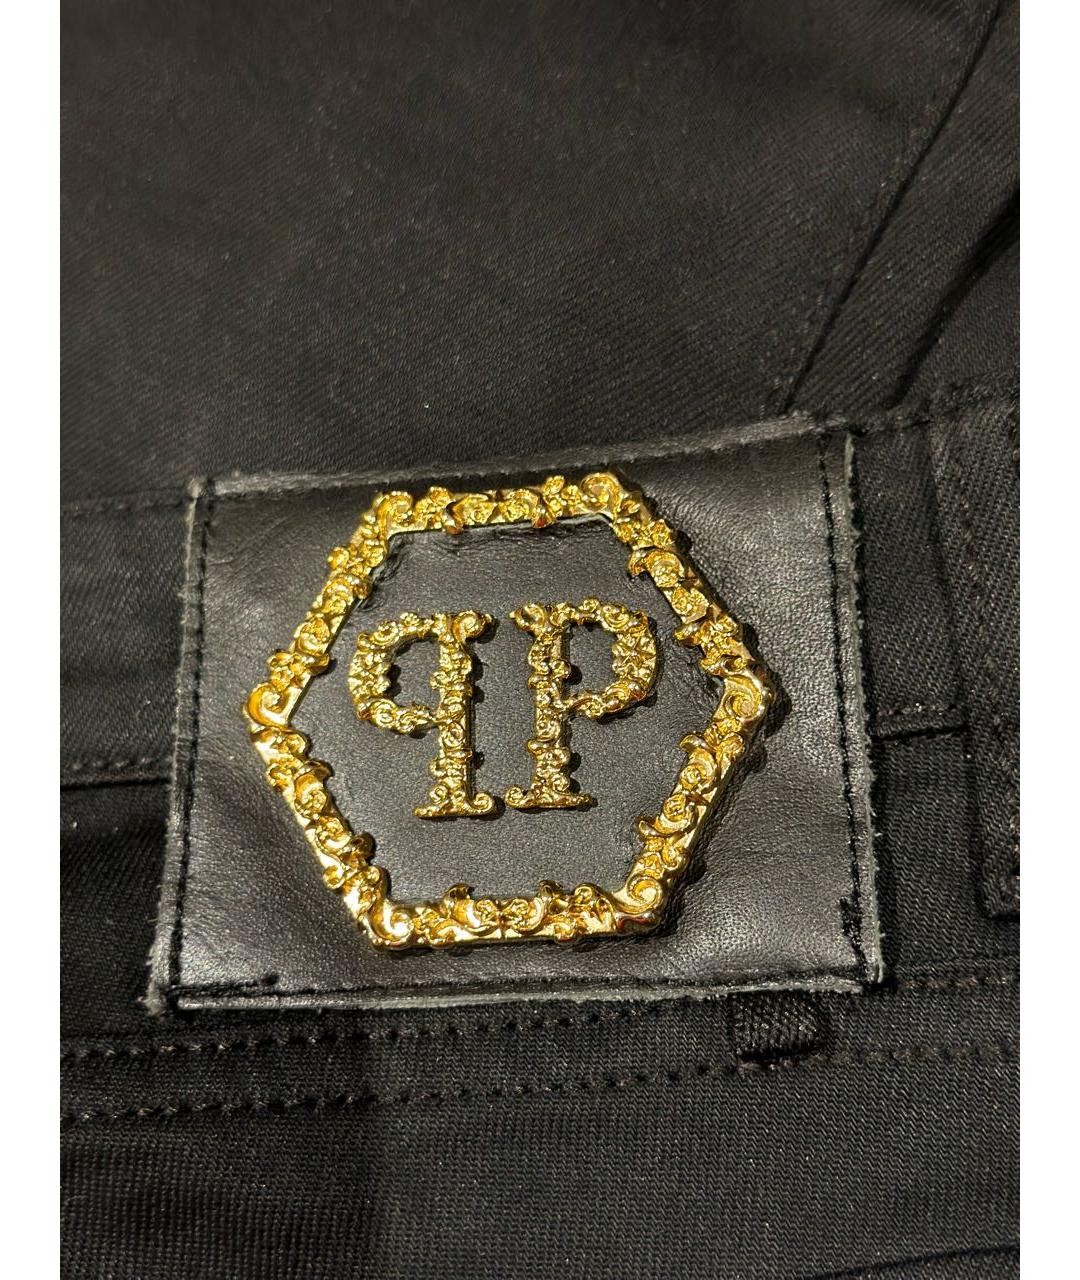 PHILIPP PLEIN Черные хлопко-эластановые джинсы слим, фото 3